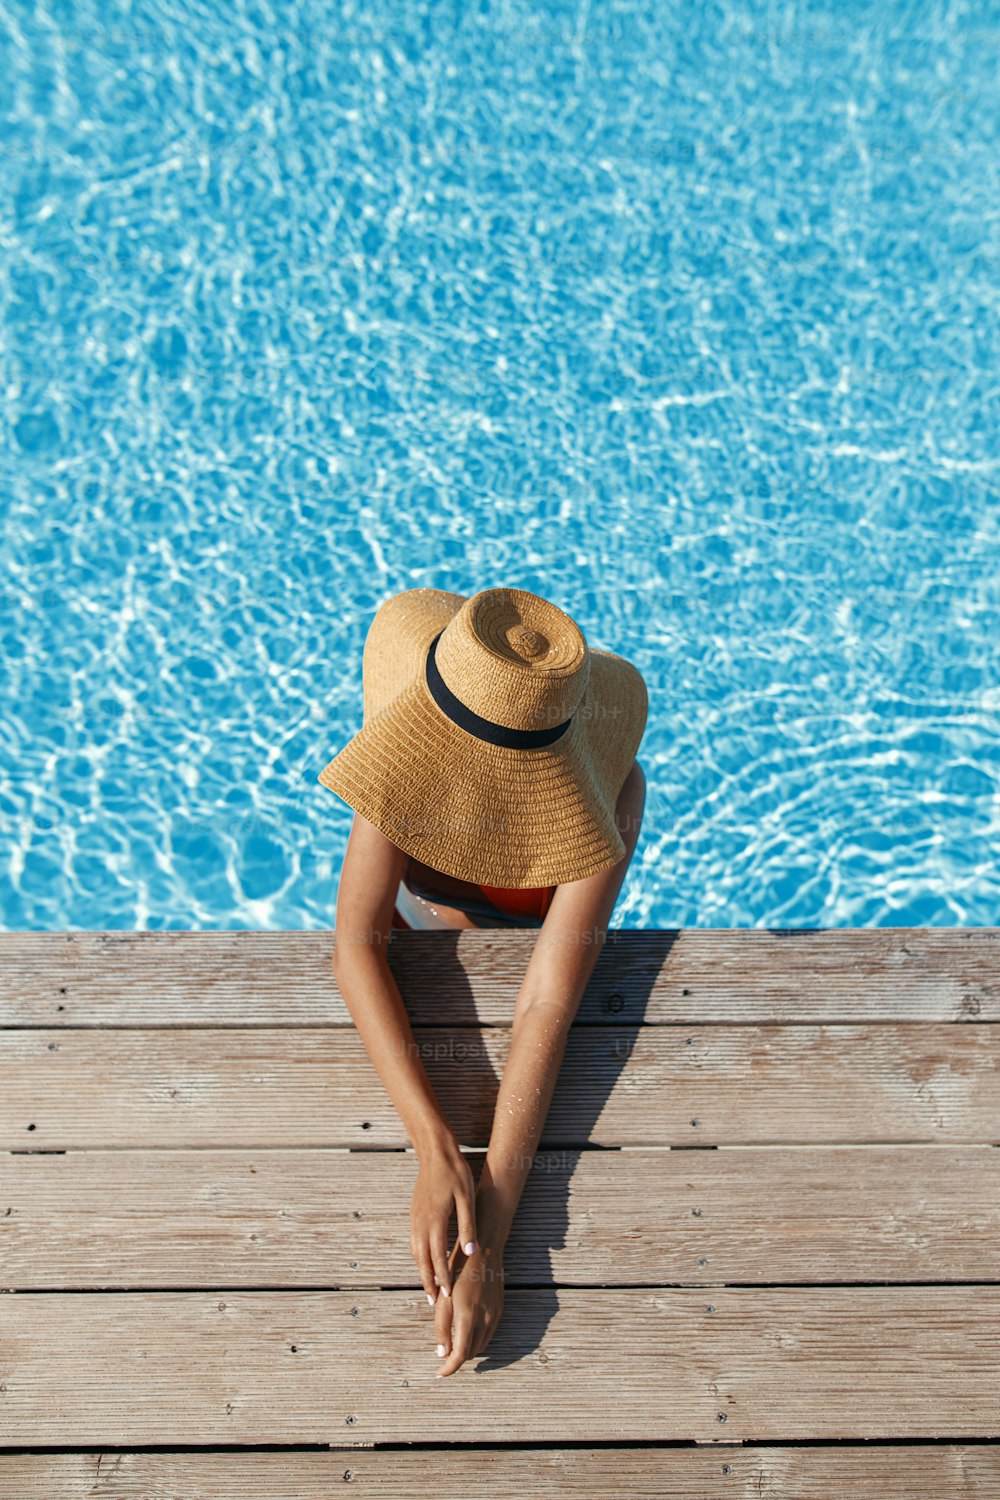 Bella donna abbronzata in cappello che si rilassa nell'acqua della piscina al molo di legno, godendo delle vacanze estive, vista dall'alto. Giovane donna magra che prende il sole sul bordo della piscina elegante. Spazio per il testo. Viaggi e Vacanze